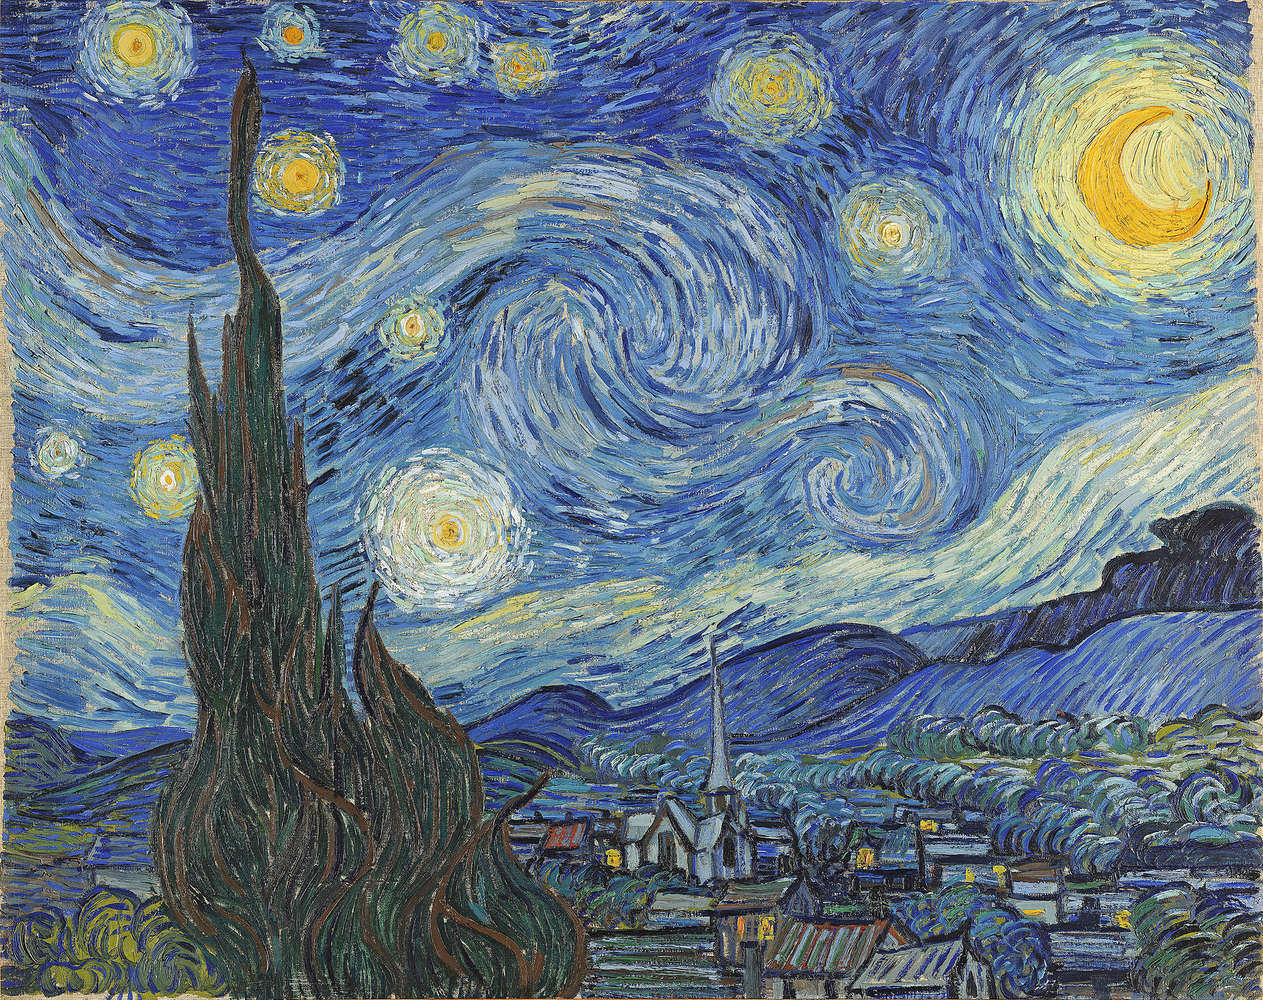             De Sterrennacht" muurschildering van Vincent van Gogh
        